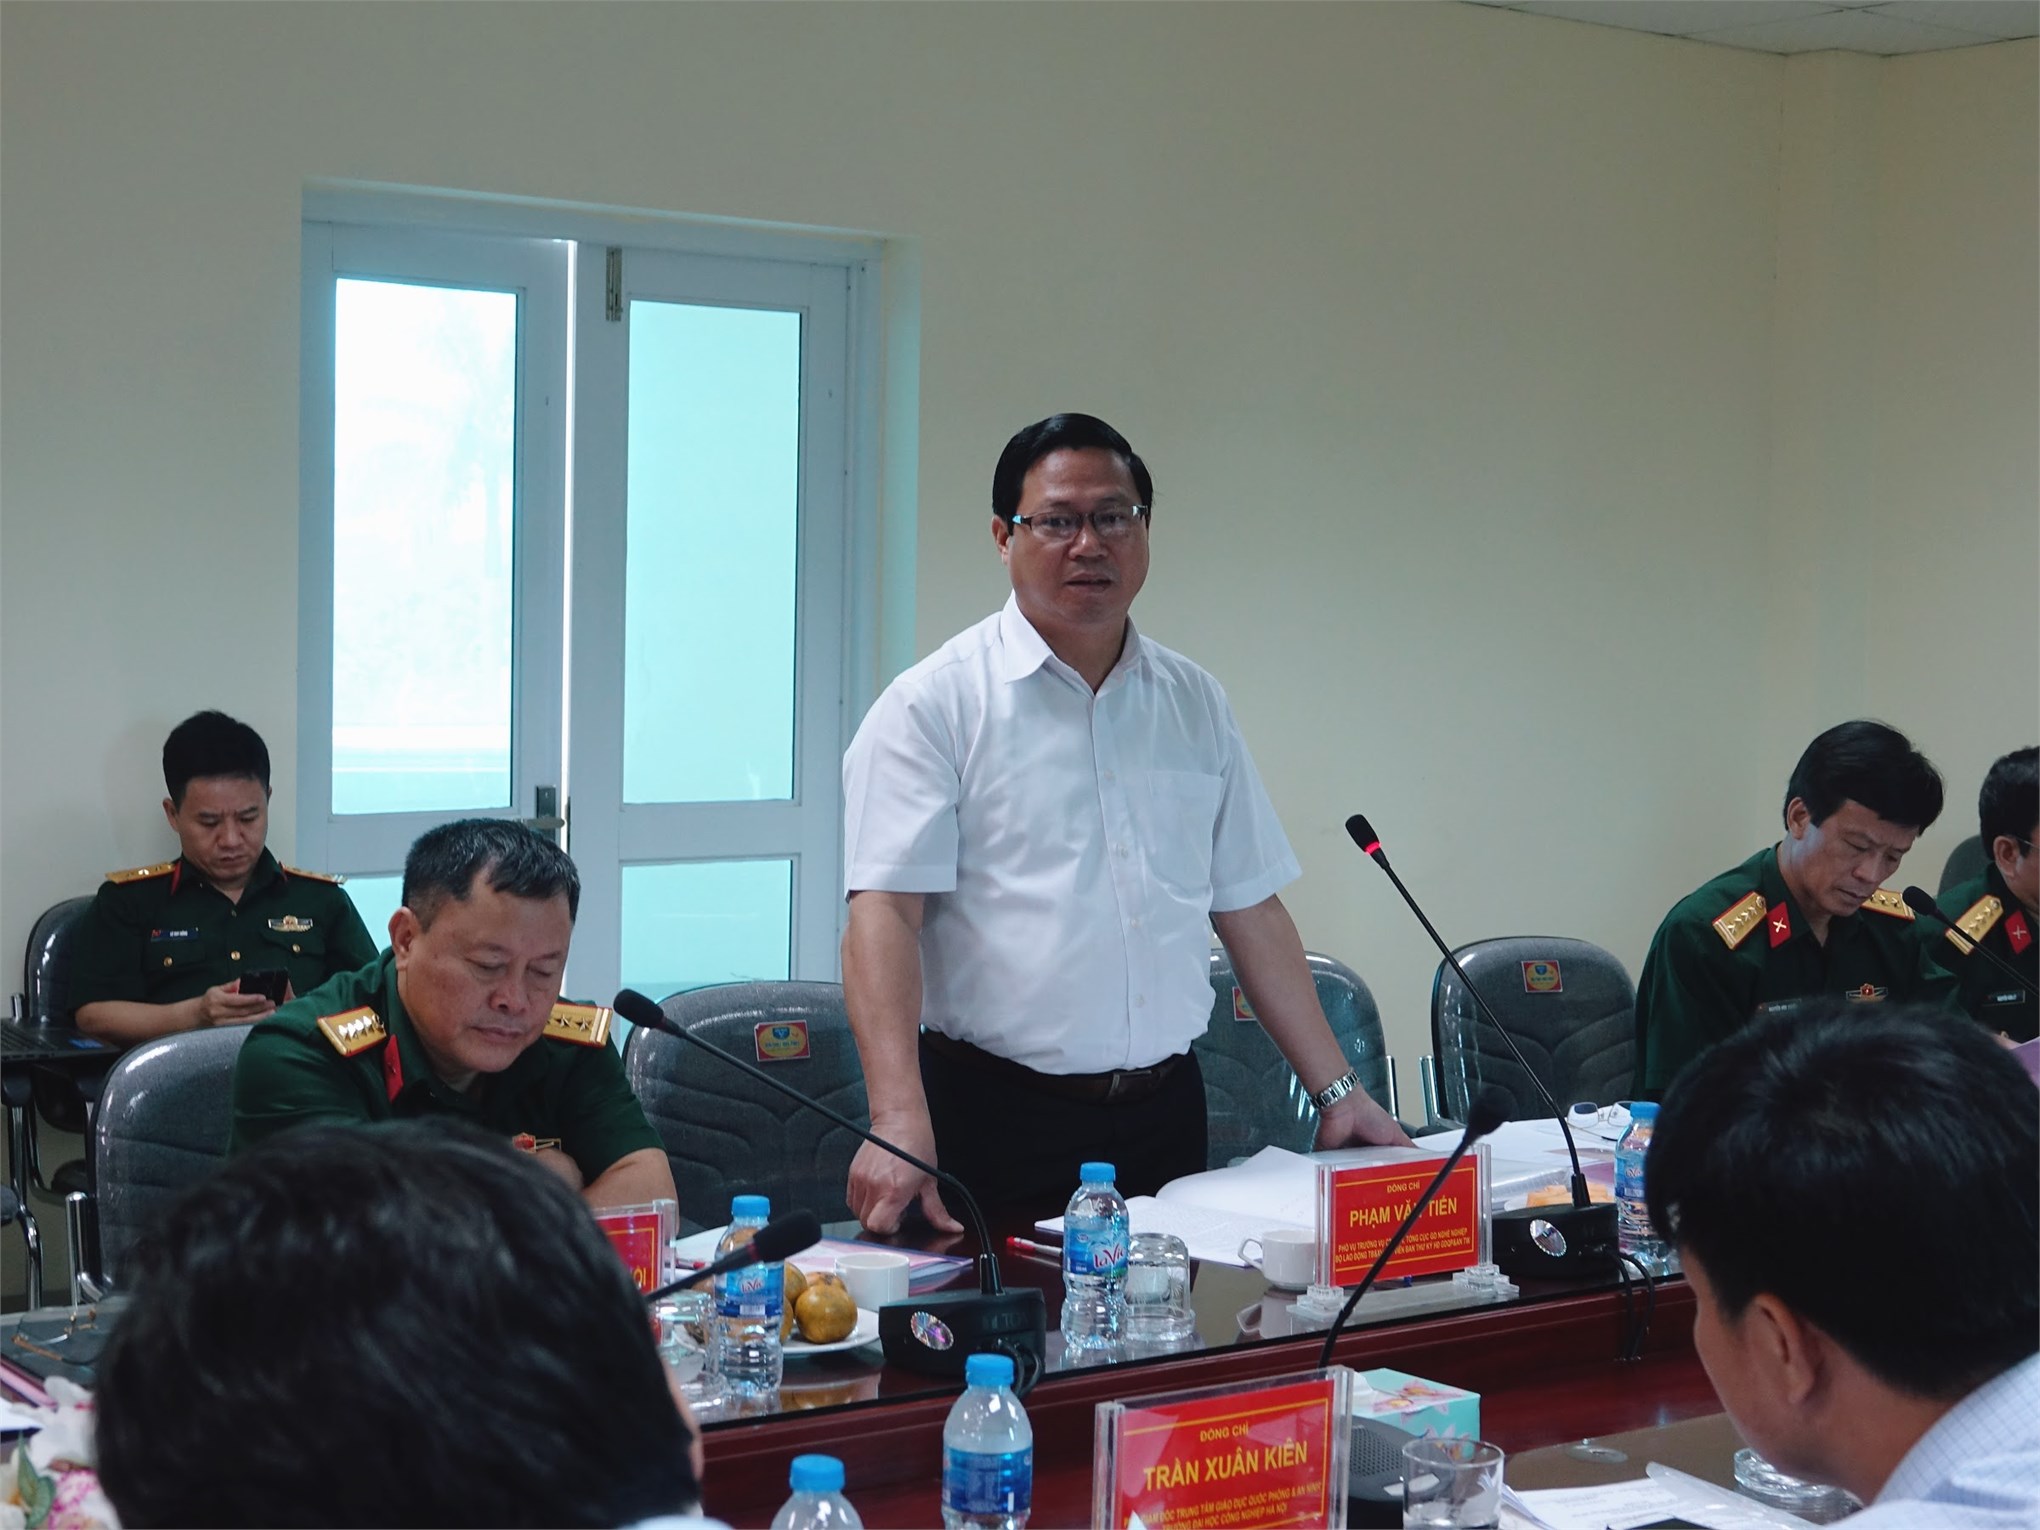 Trung tâm Giáo dục quốc phòng và an ninh Trường Đại học Công nghiệp Hà Nội hoàn thành xuất sắc nhiệm vụ trong thực hiện nhiệm vụ giáo dục quốc phòng, an ninh cho học sinh, sinh viên